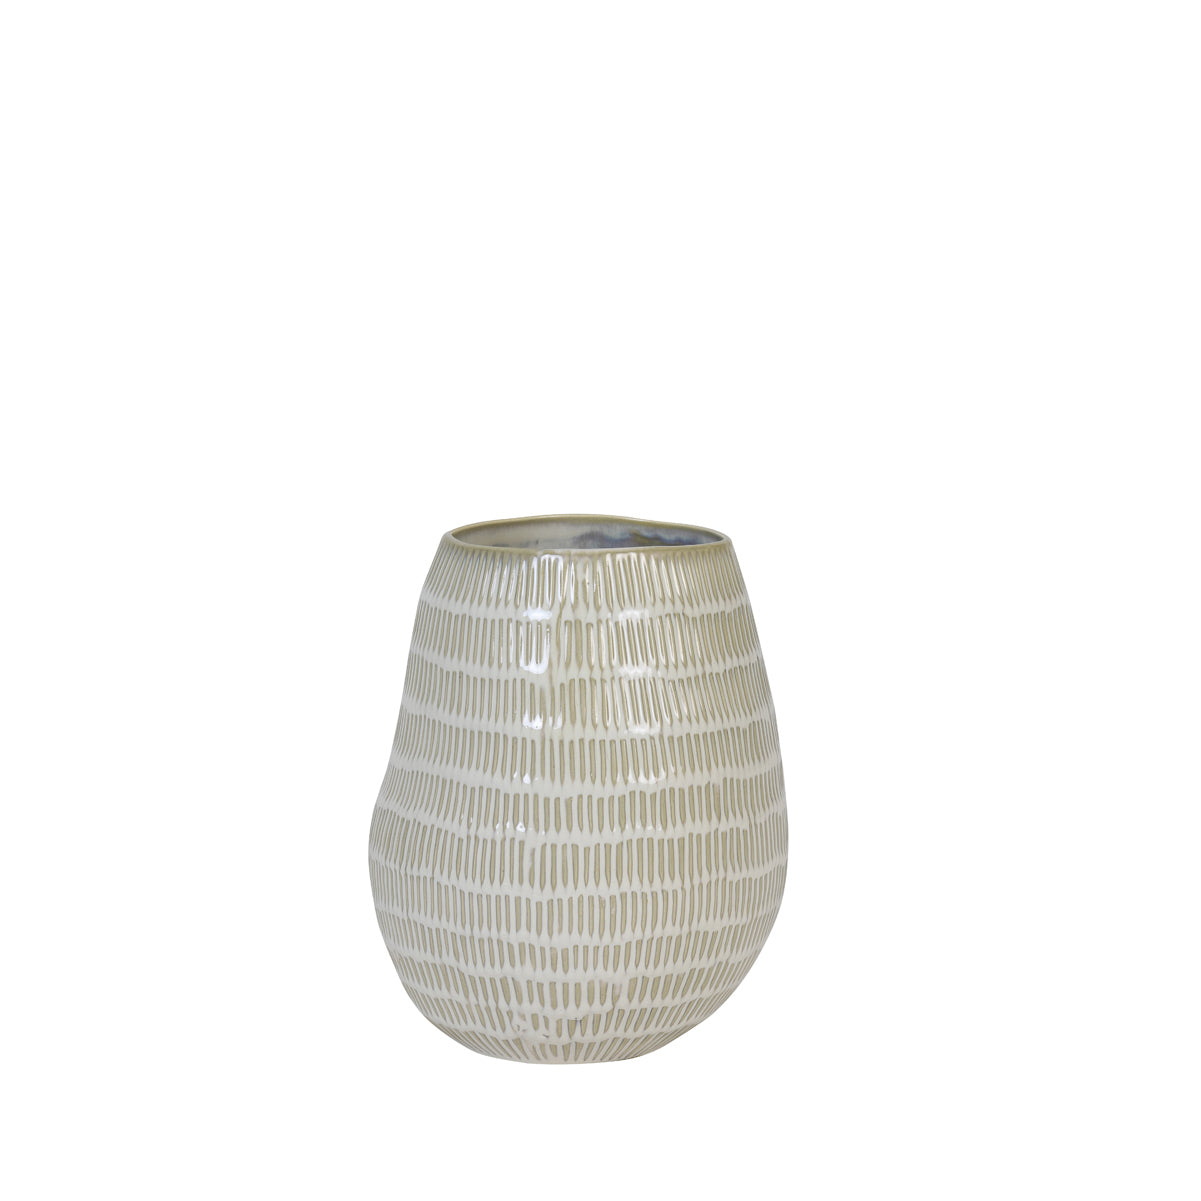 Vaza GIORGIA, Ø20,5x26 cm, kreminė, keramika